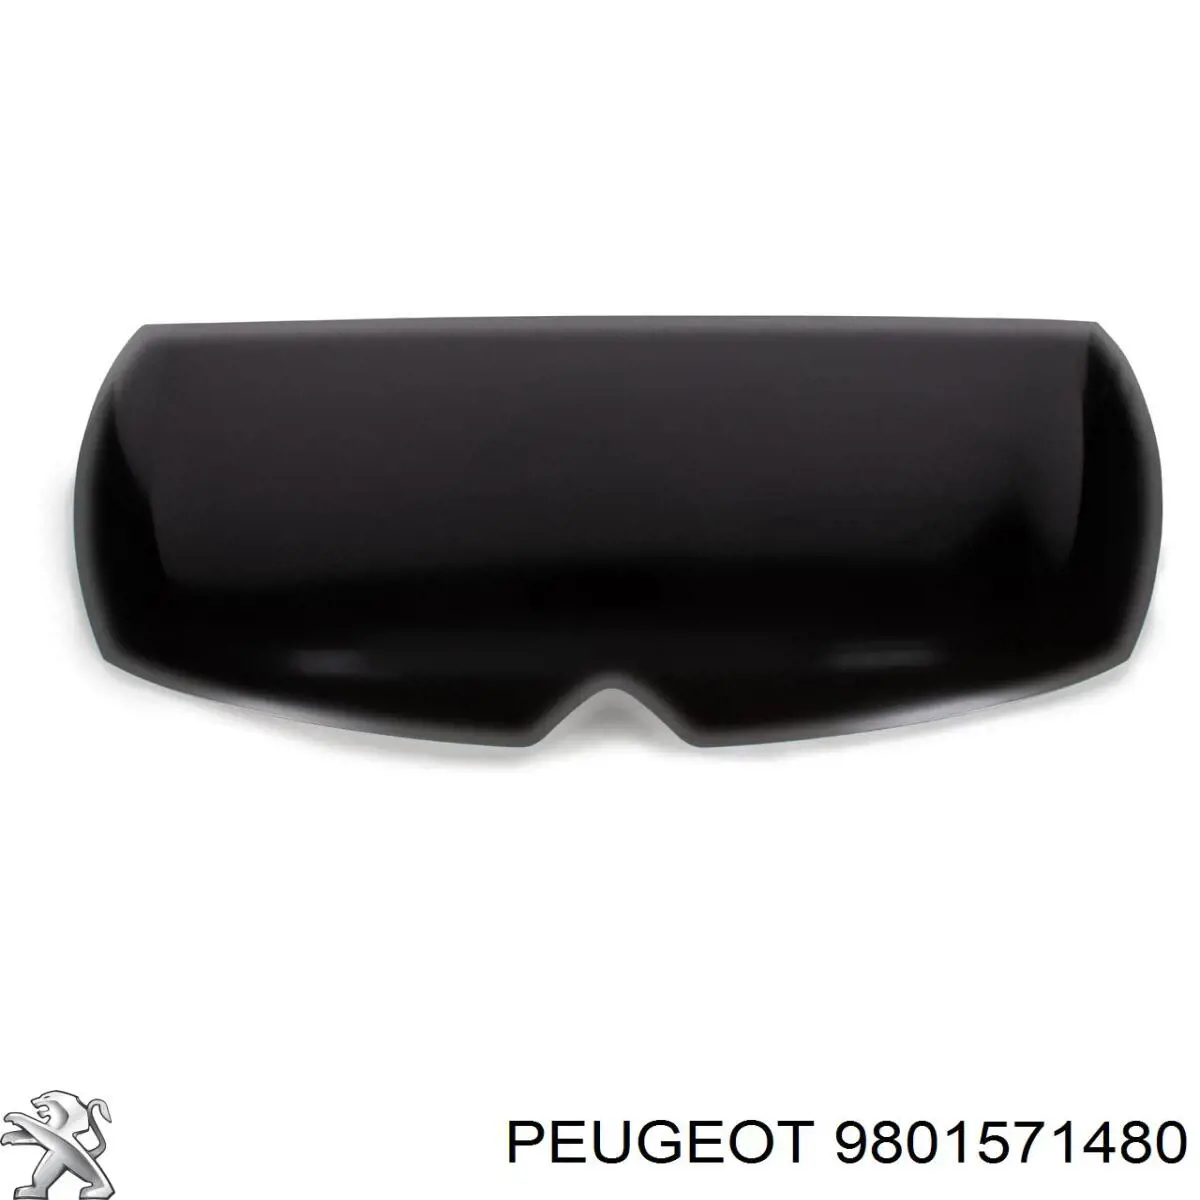 9801571480 Peugeot/Citroen capota